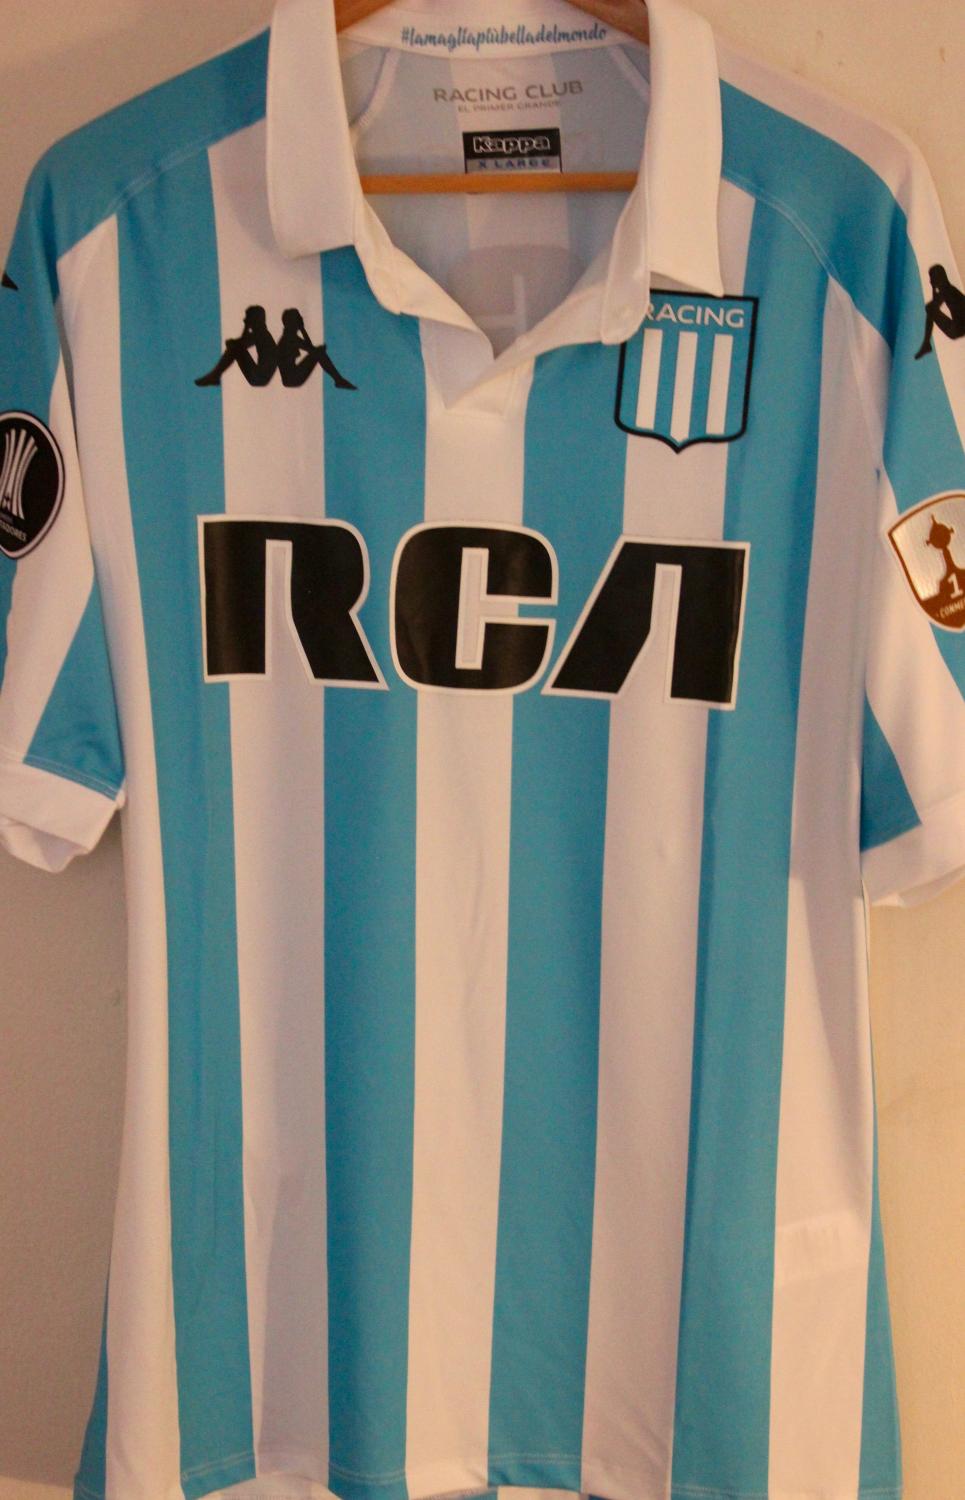 Roux boleto Florecer Racing Club Home Camiseta de Fútbol 2018 - 2019. Sponsored by RCA